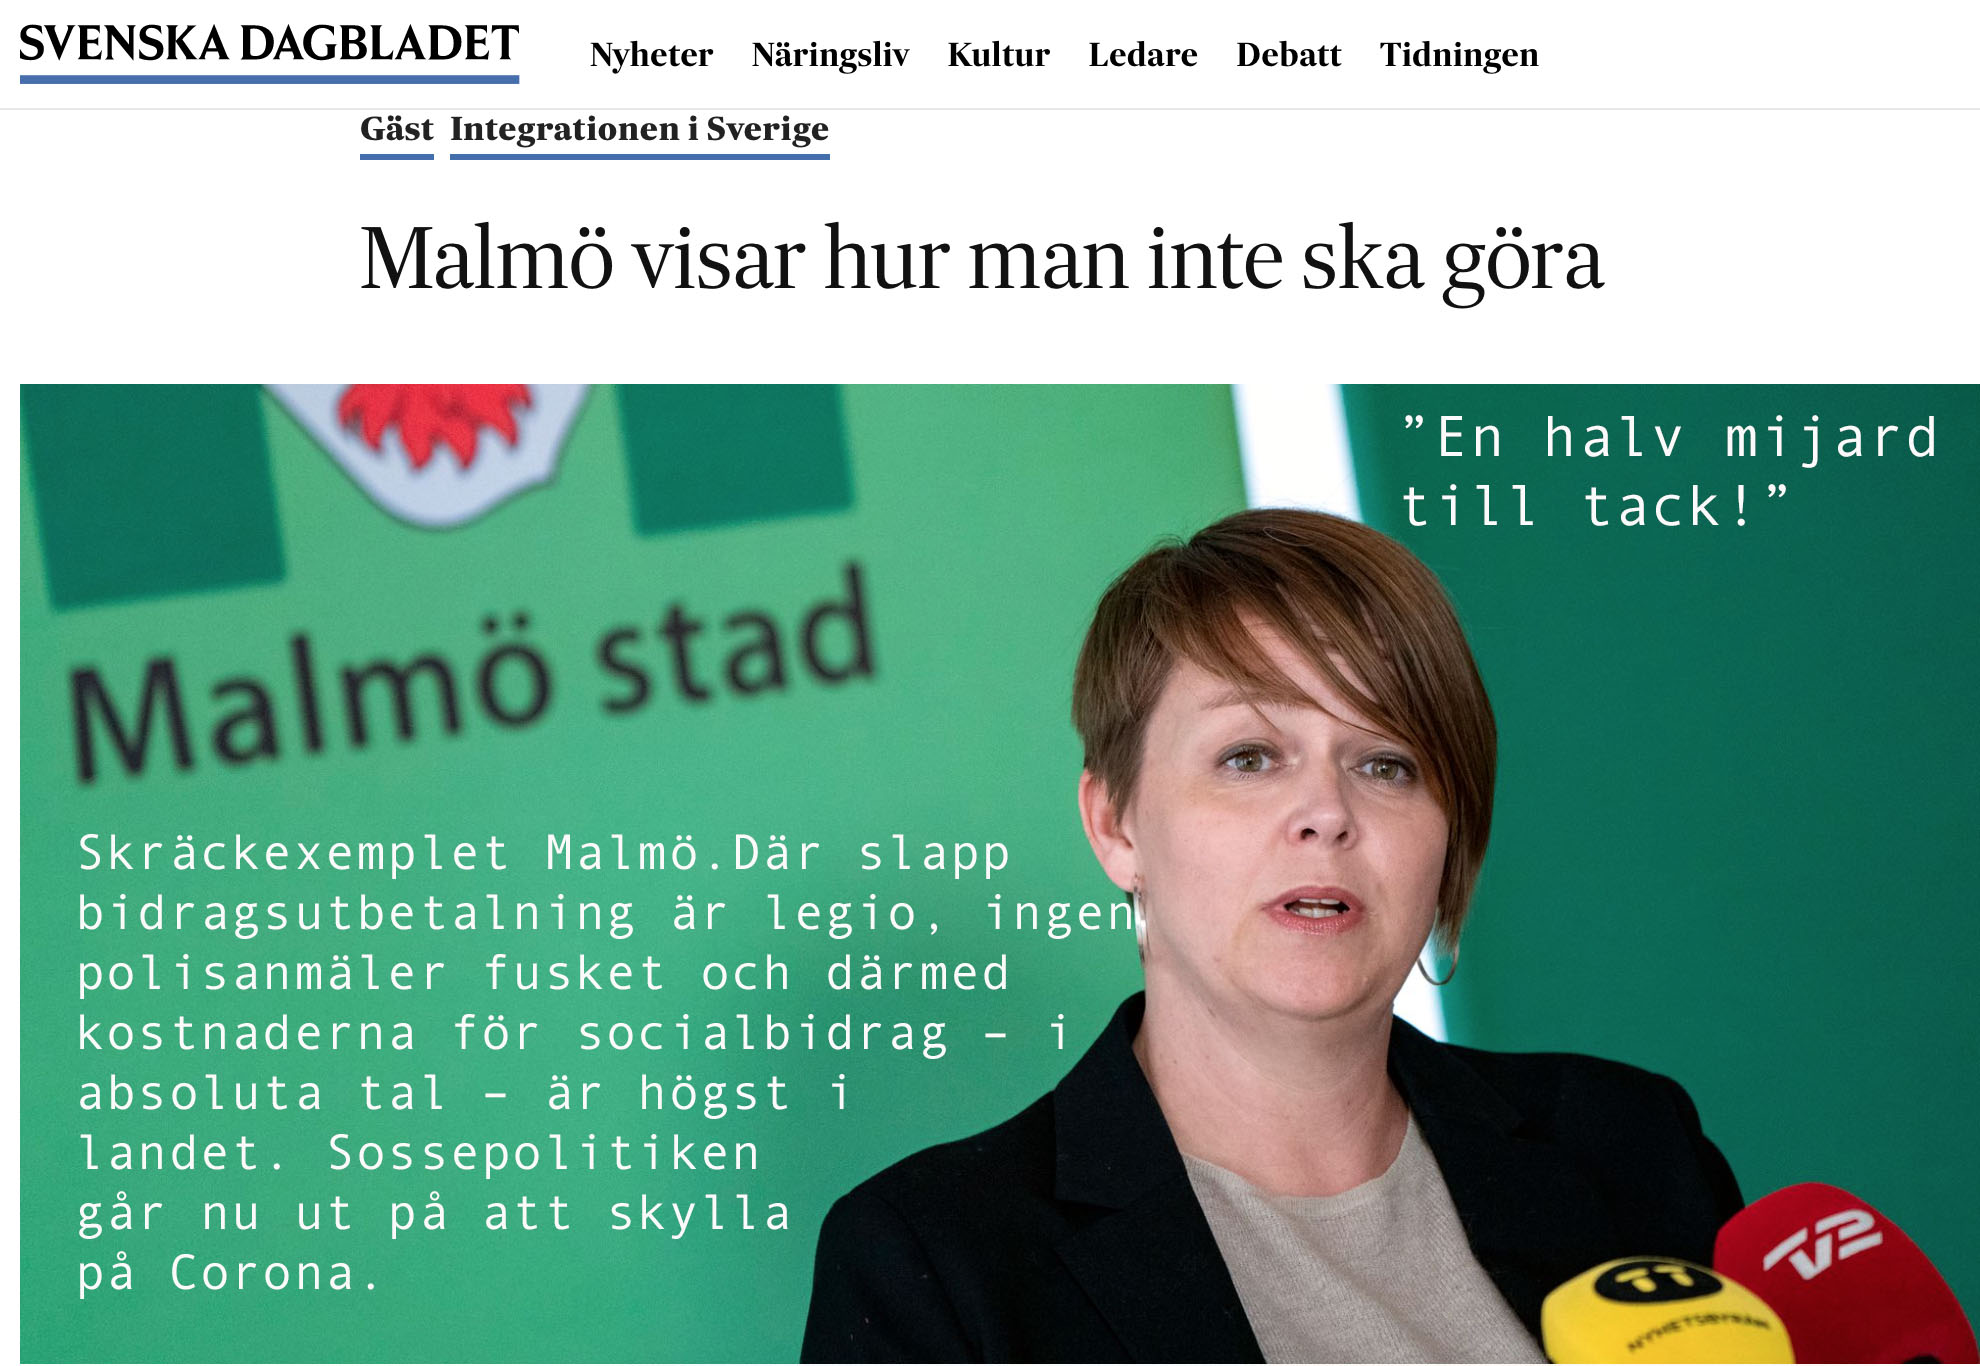 S i Malmö stjäl alla andra svenskars pengar.